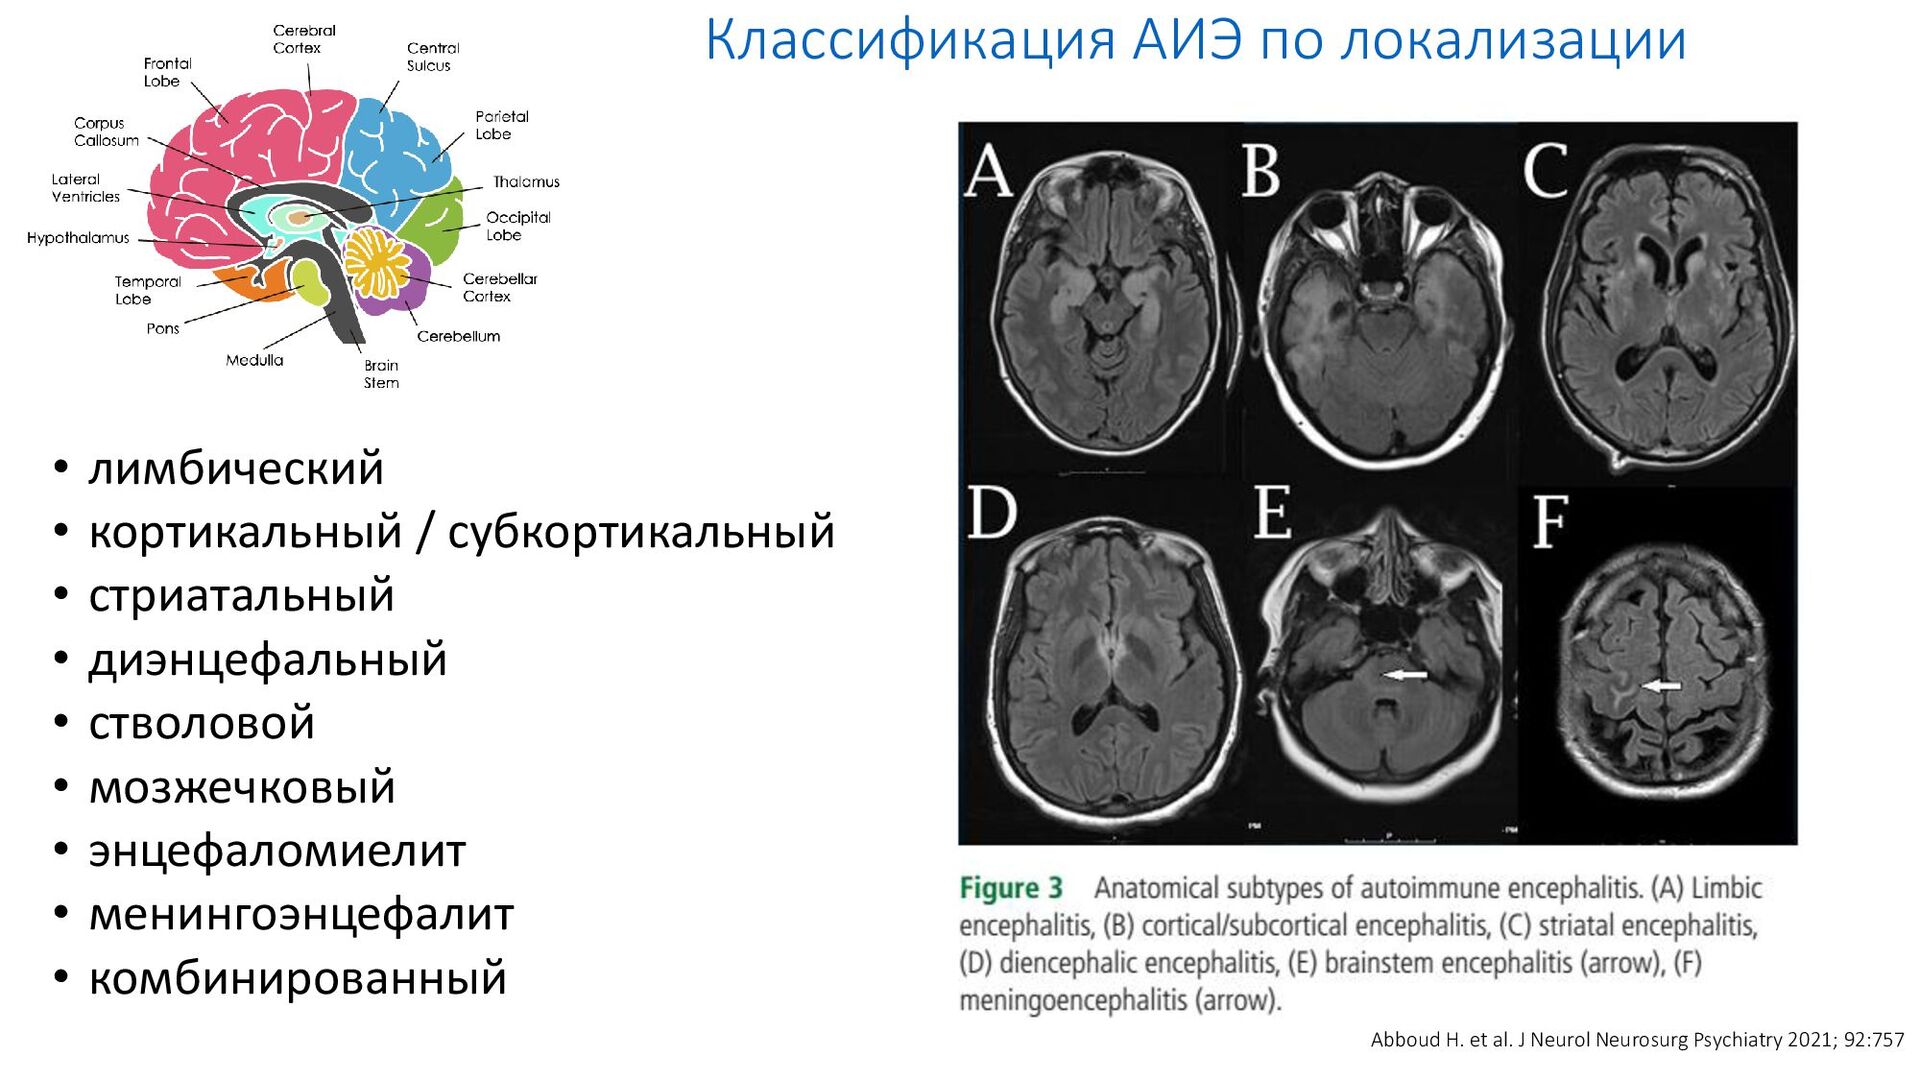 Диэнцефальная дисфункция головного мозга. Классификация менингоэнцефалита. Стволовой энцефаломиелит. Кортикально и субкортикально. Субкортикальный лейкоареоз.